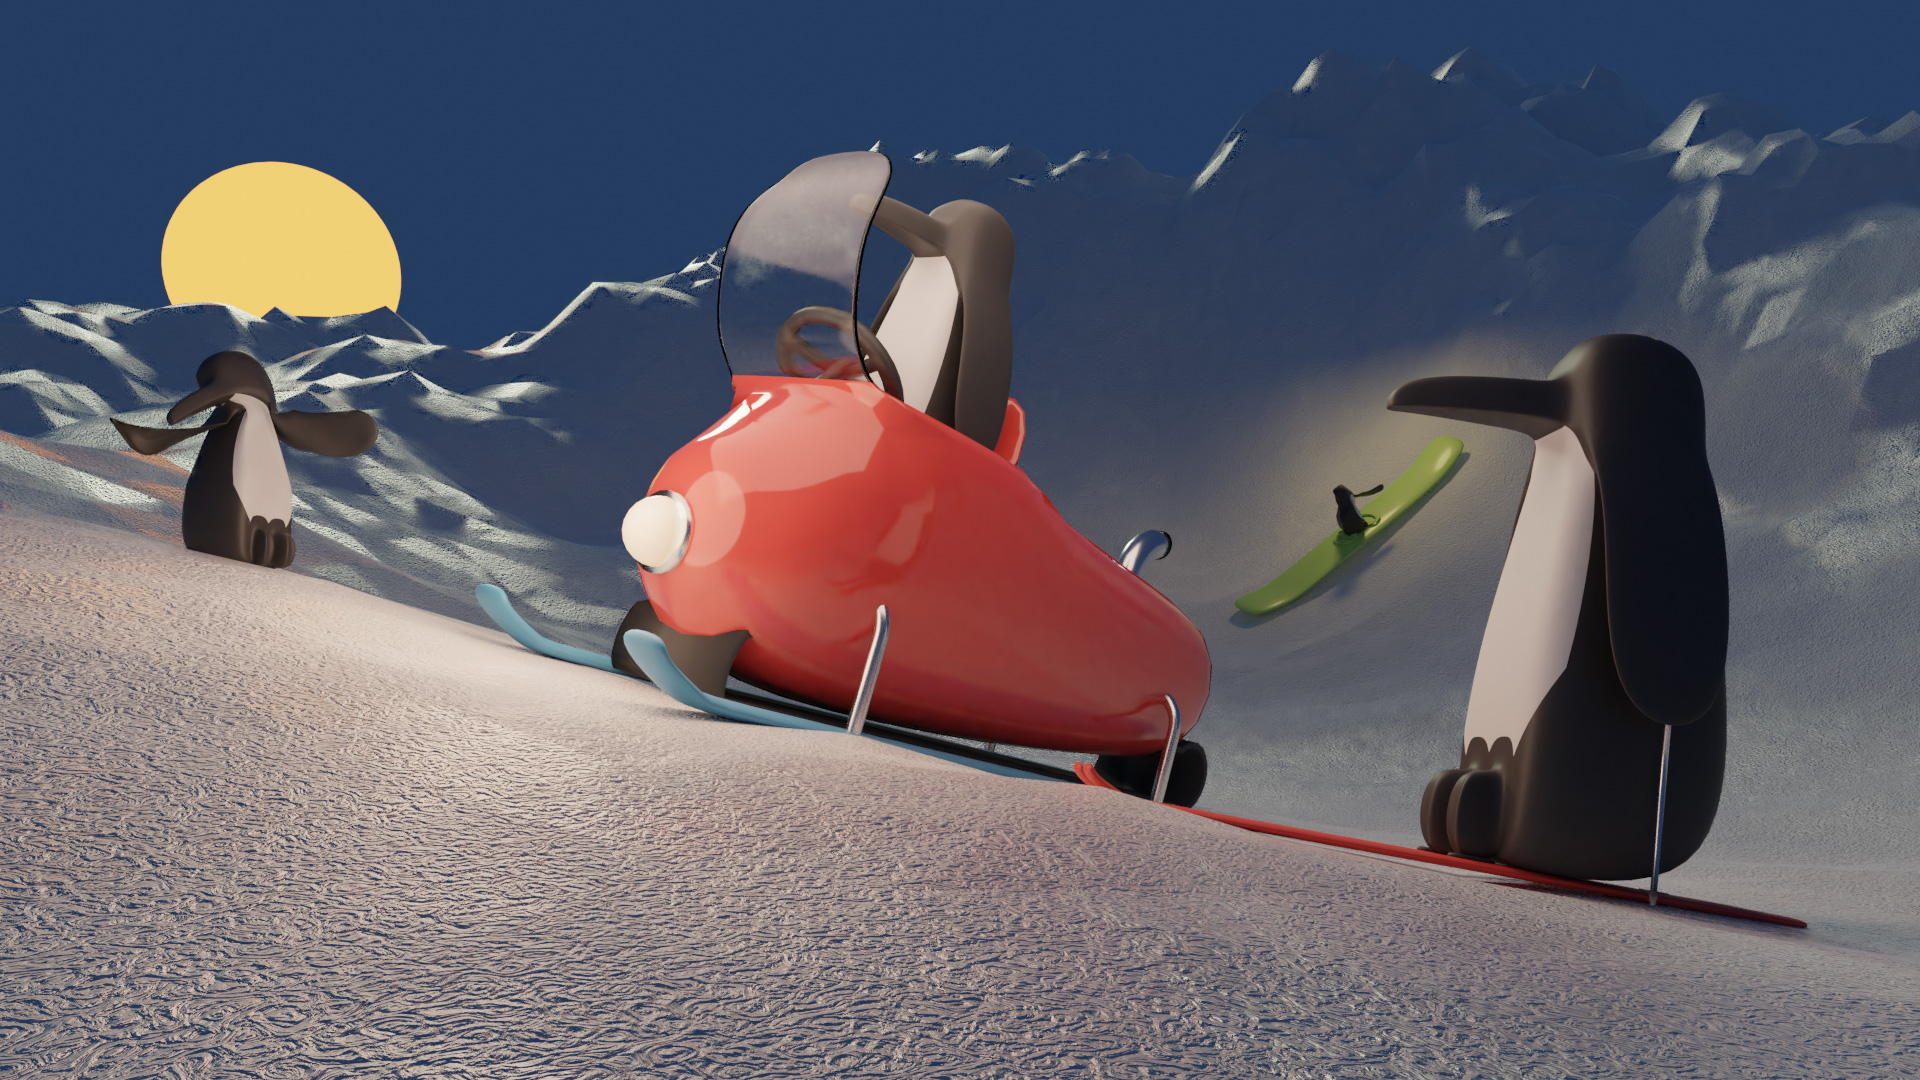 Penguin Ski Trip preview image 1